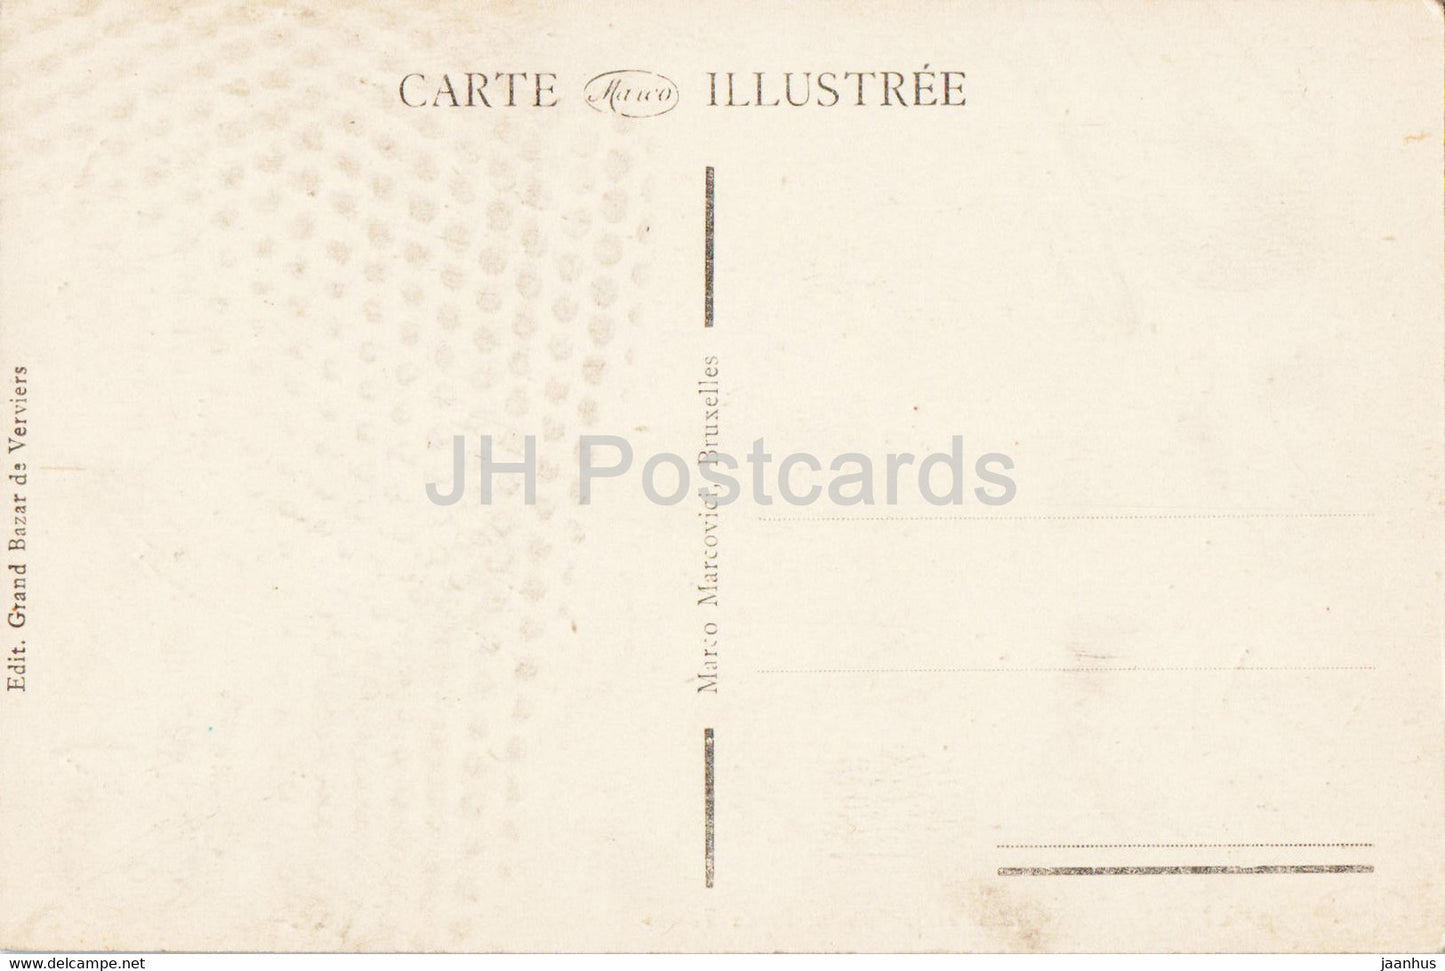 Verviers - Place et Monument Vieux Temps - 10 - carte postale ancienne - Belgique - inutilisée